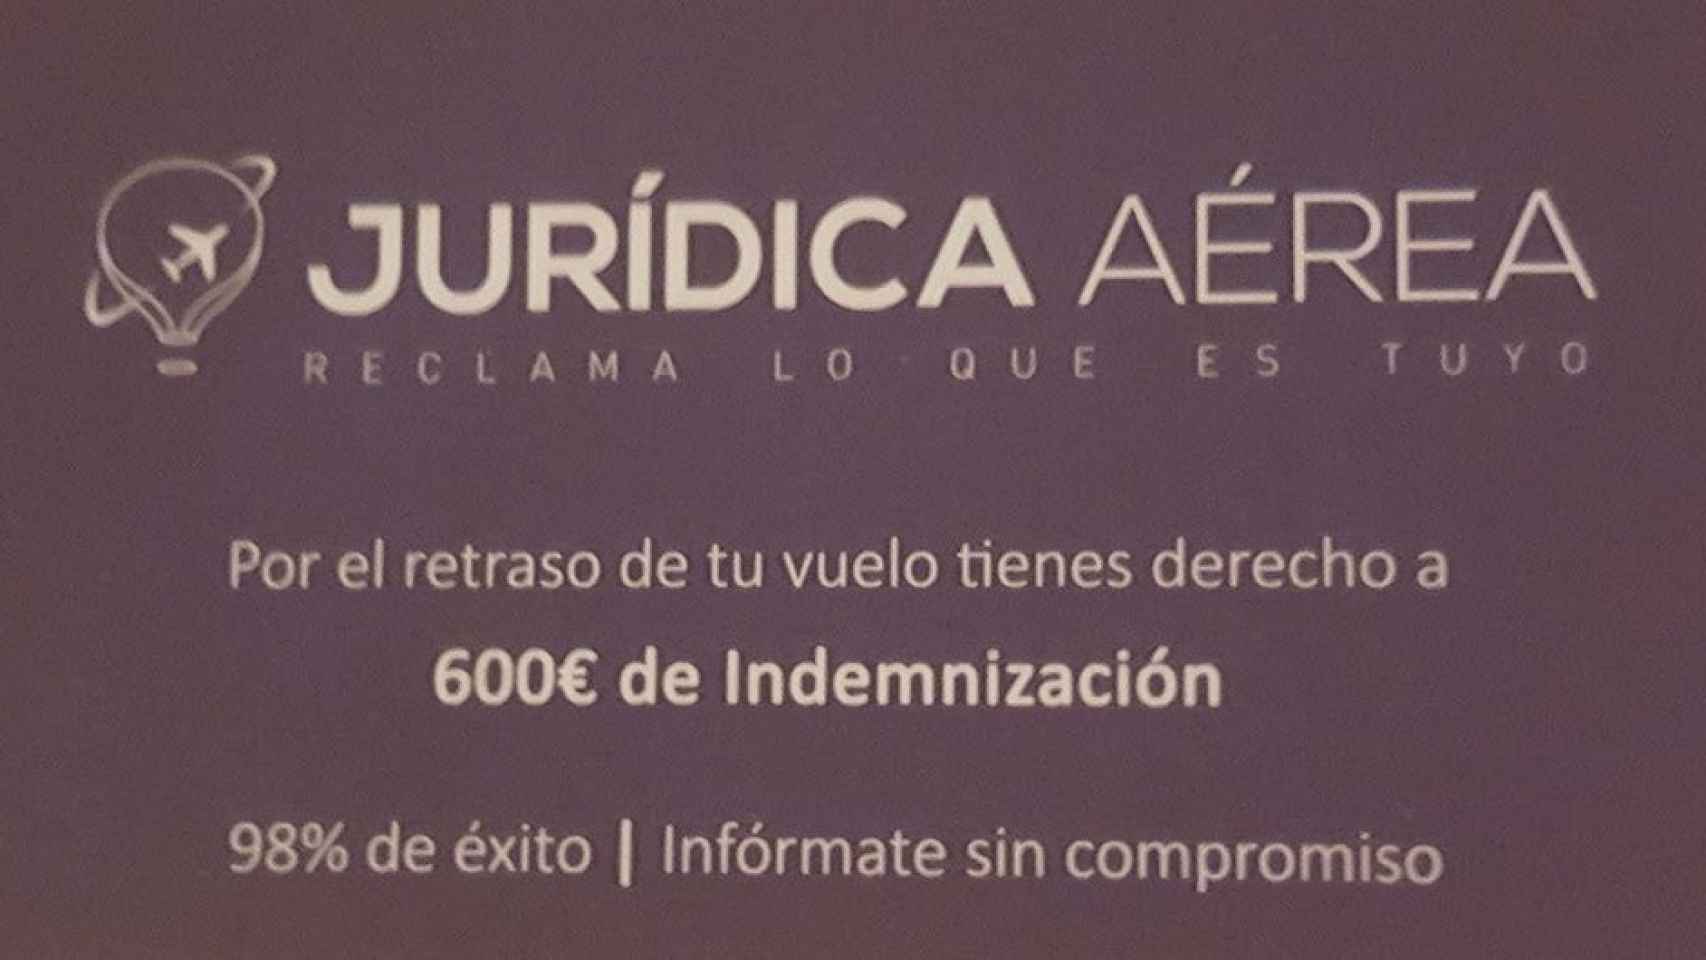 Tarjeta de publicidad de un despacho de abogados de Madrid